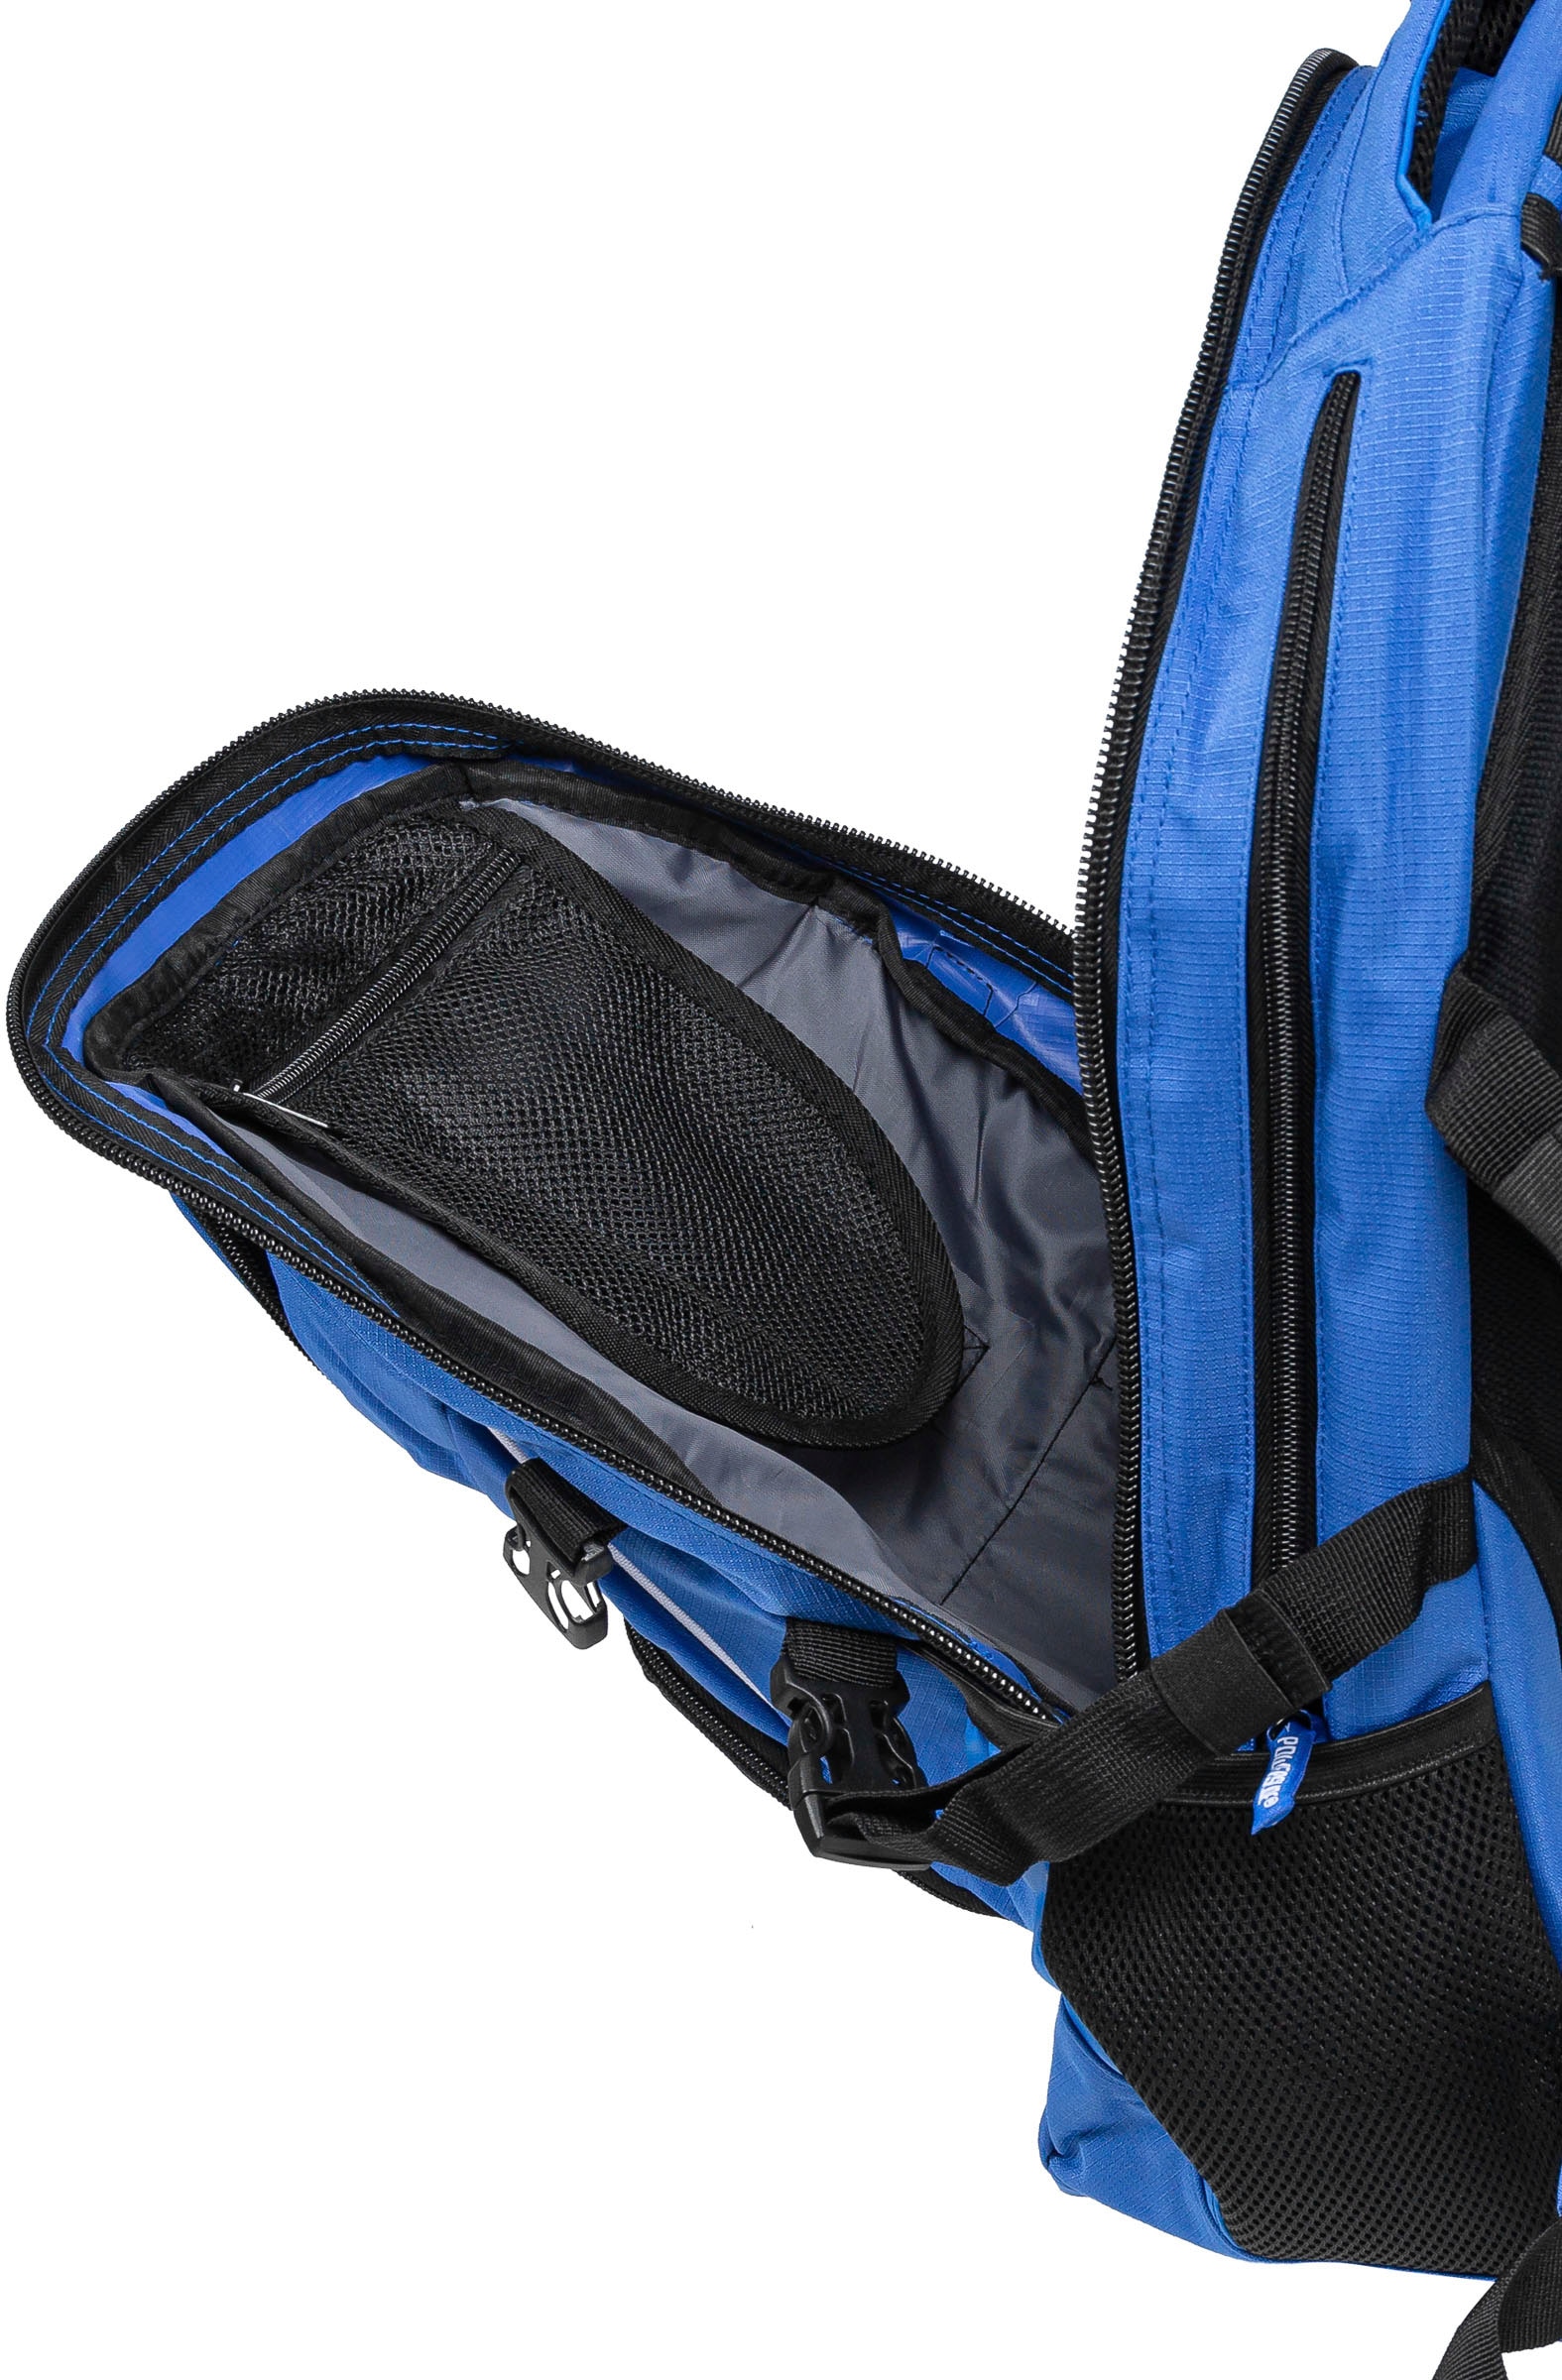 Powerslide Sportrucksack »WeLoveToSkate Backpack«